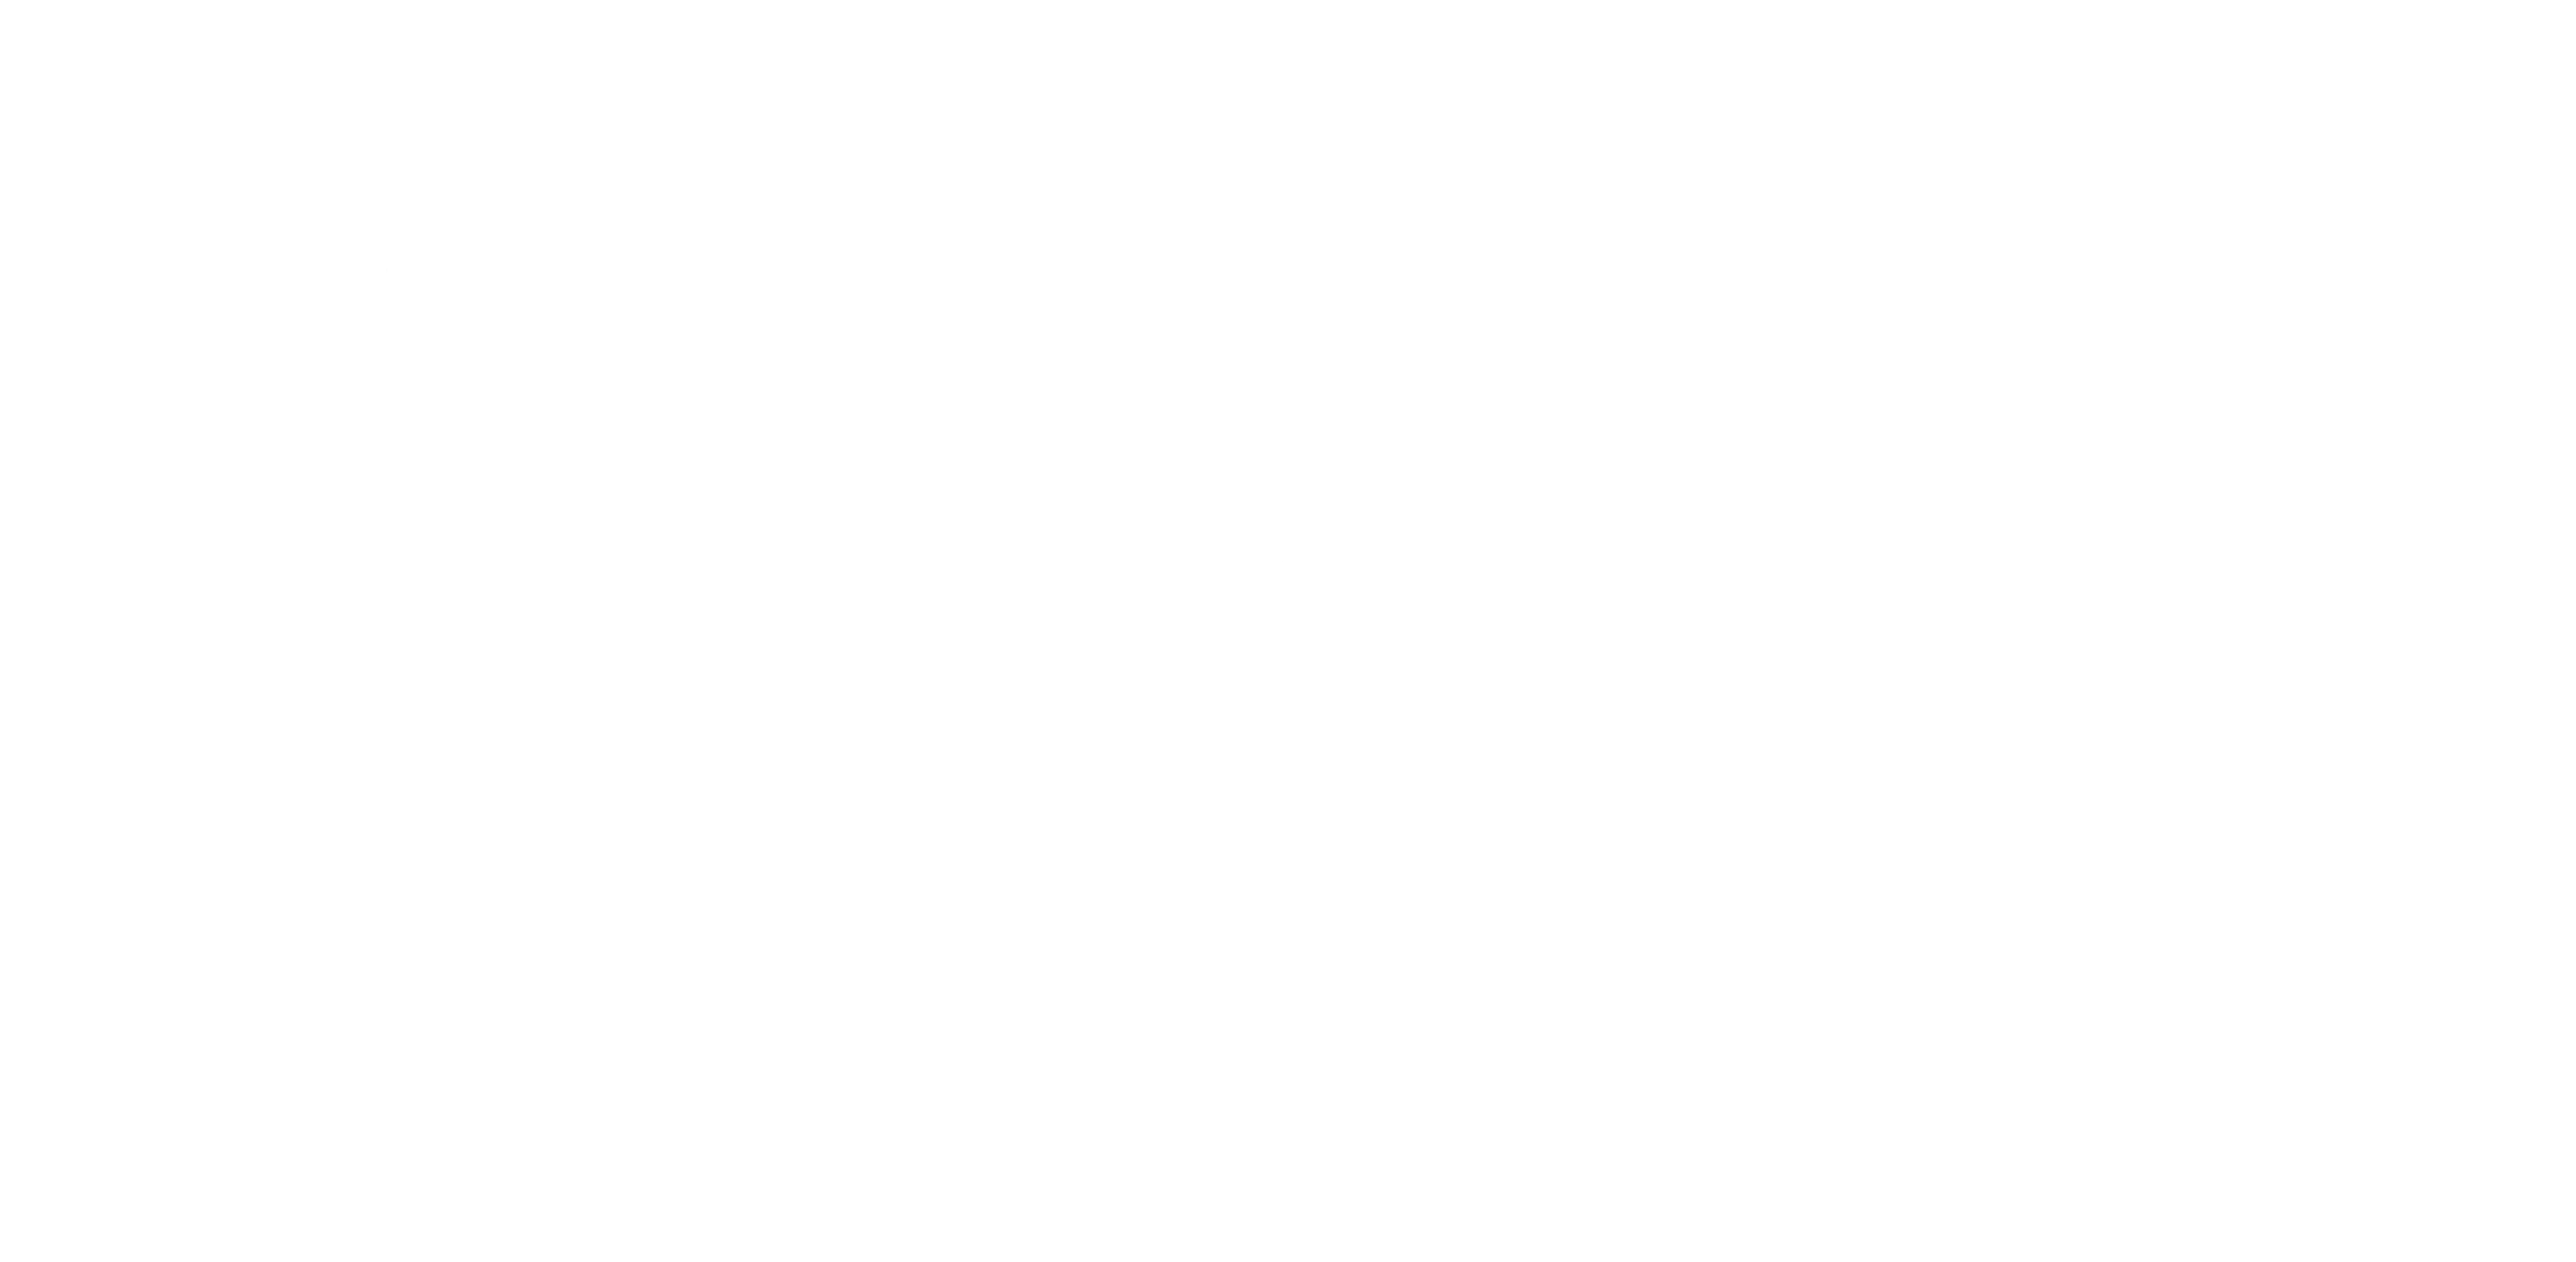 Camdenton Bible Baptist Church | Camdenton, MO